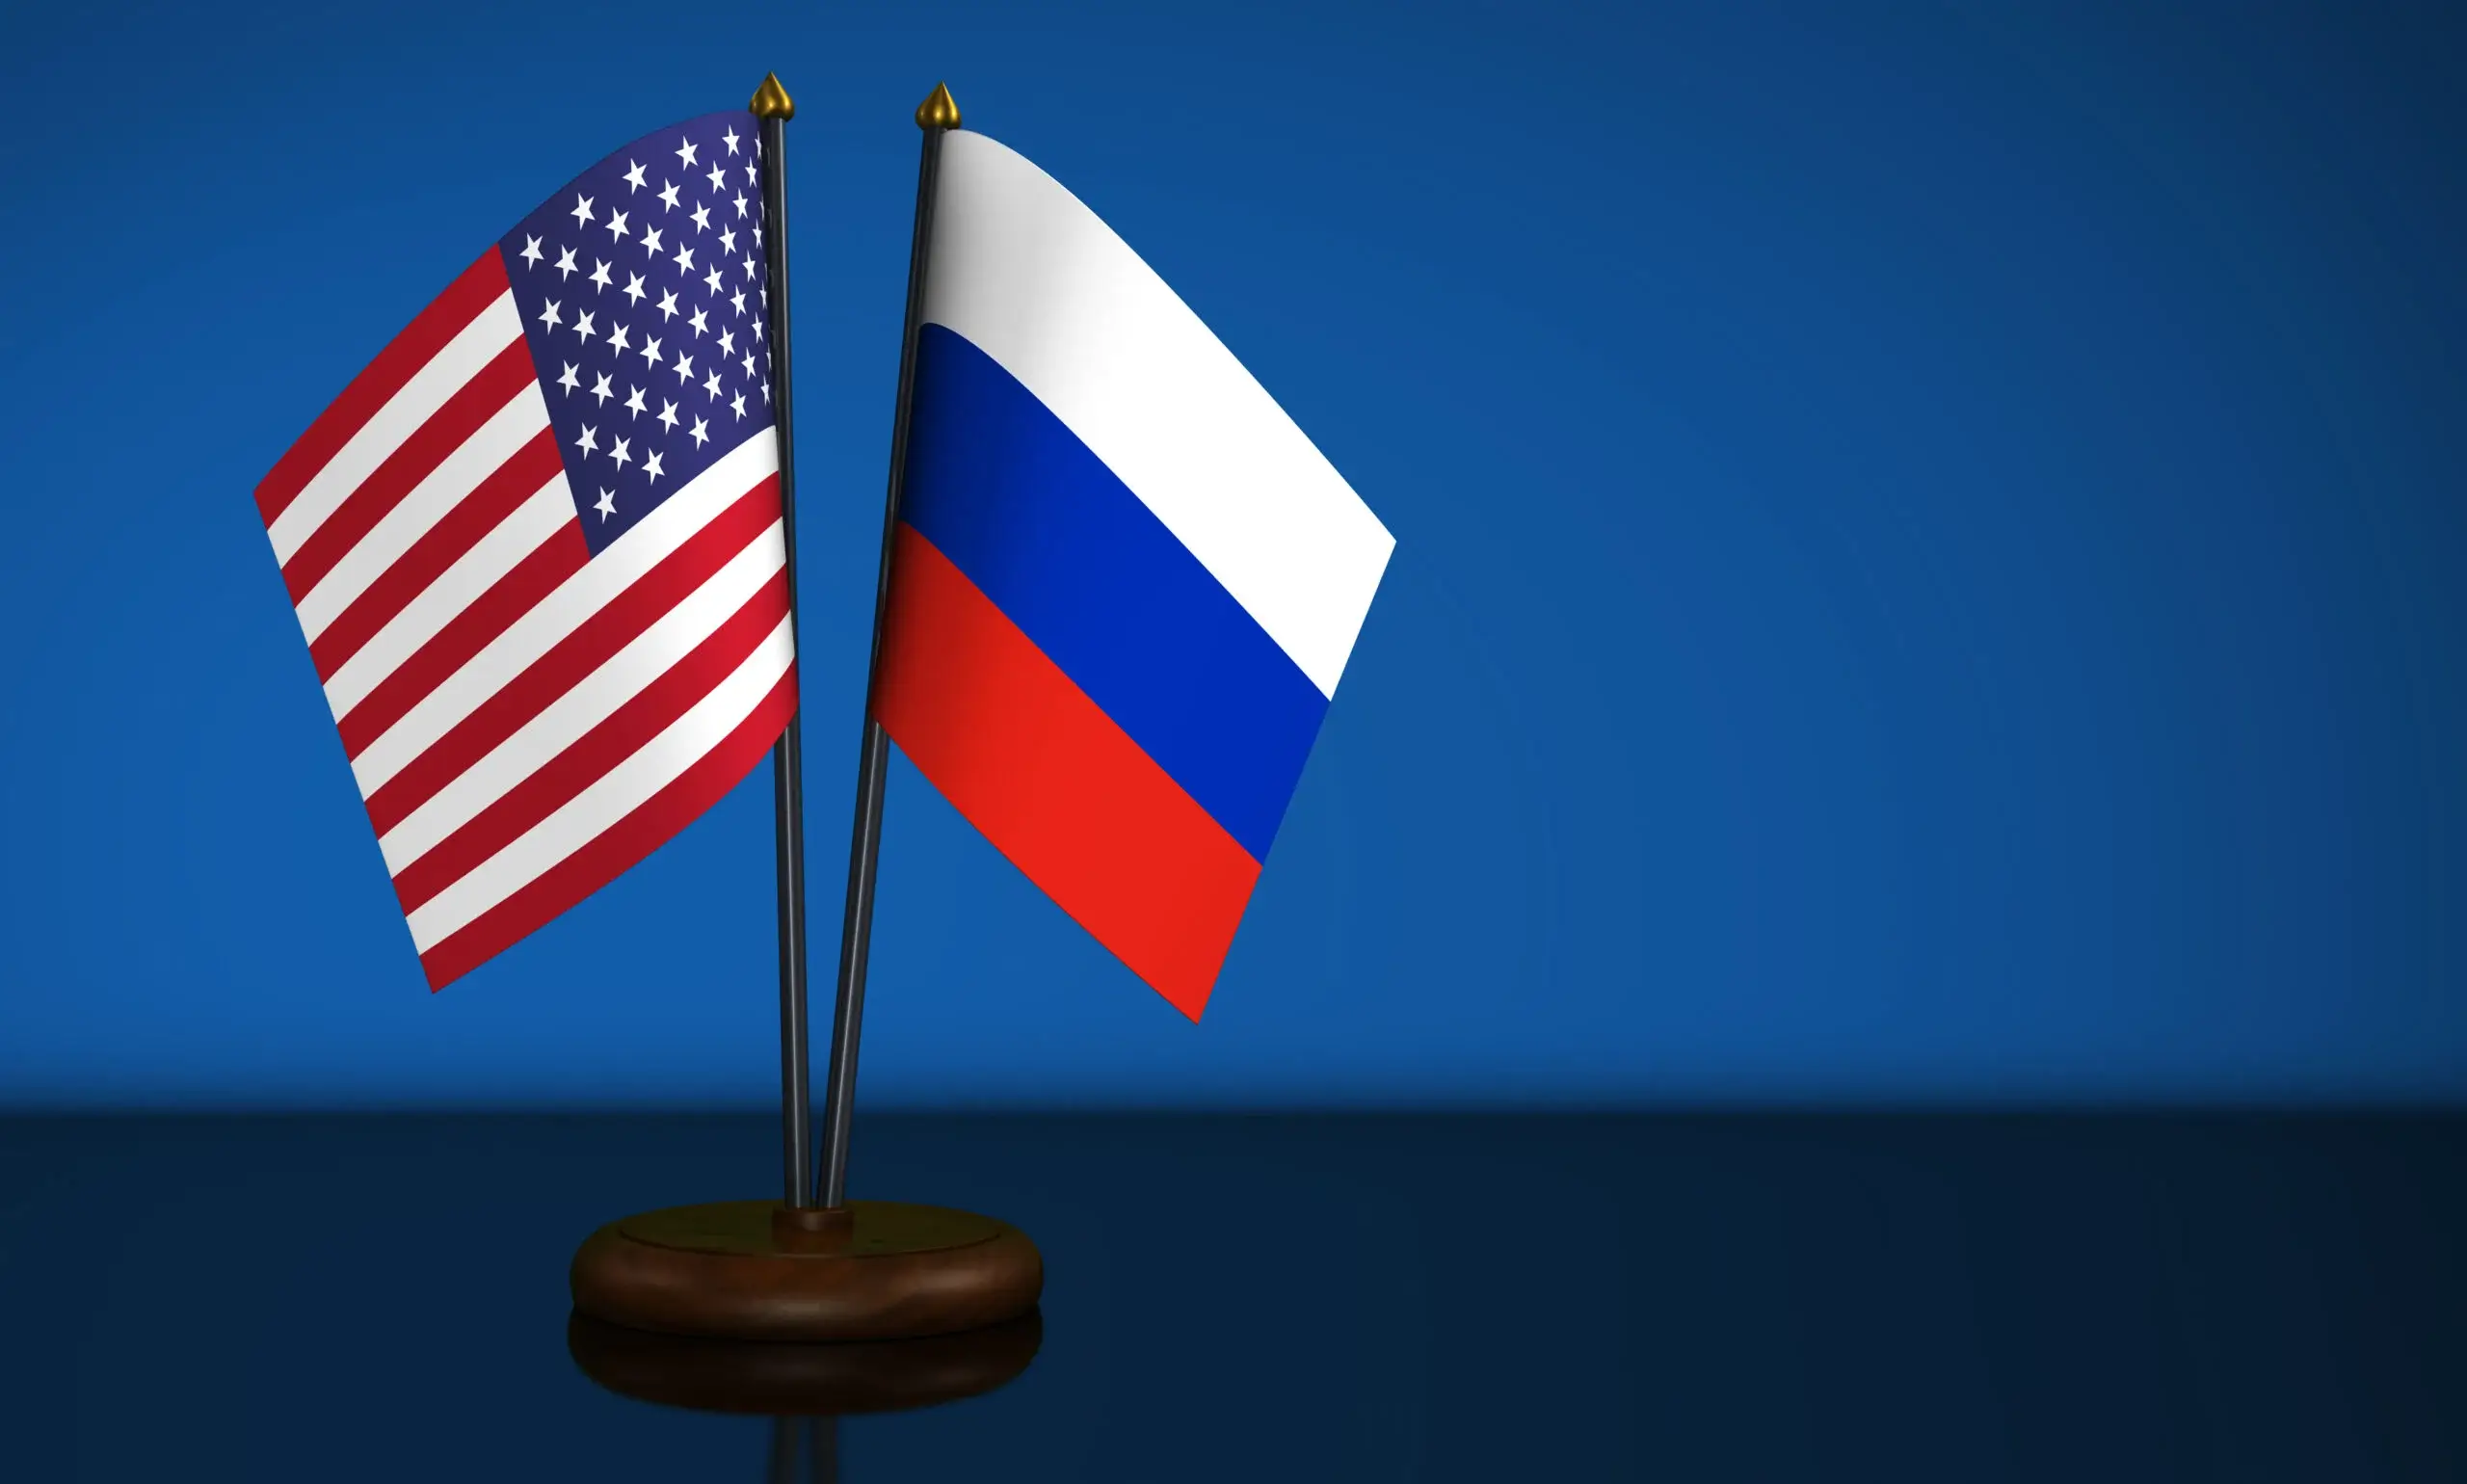 Налагането на санкции от страна на САЩ срещу Русия се